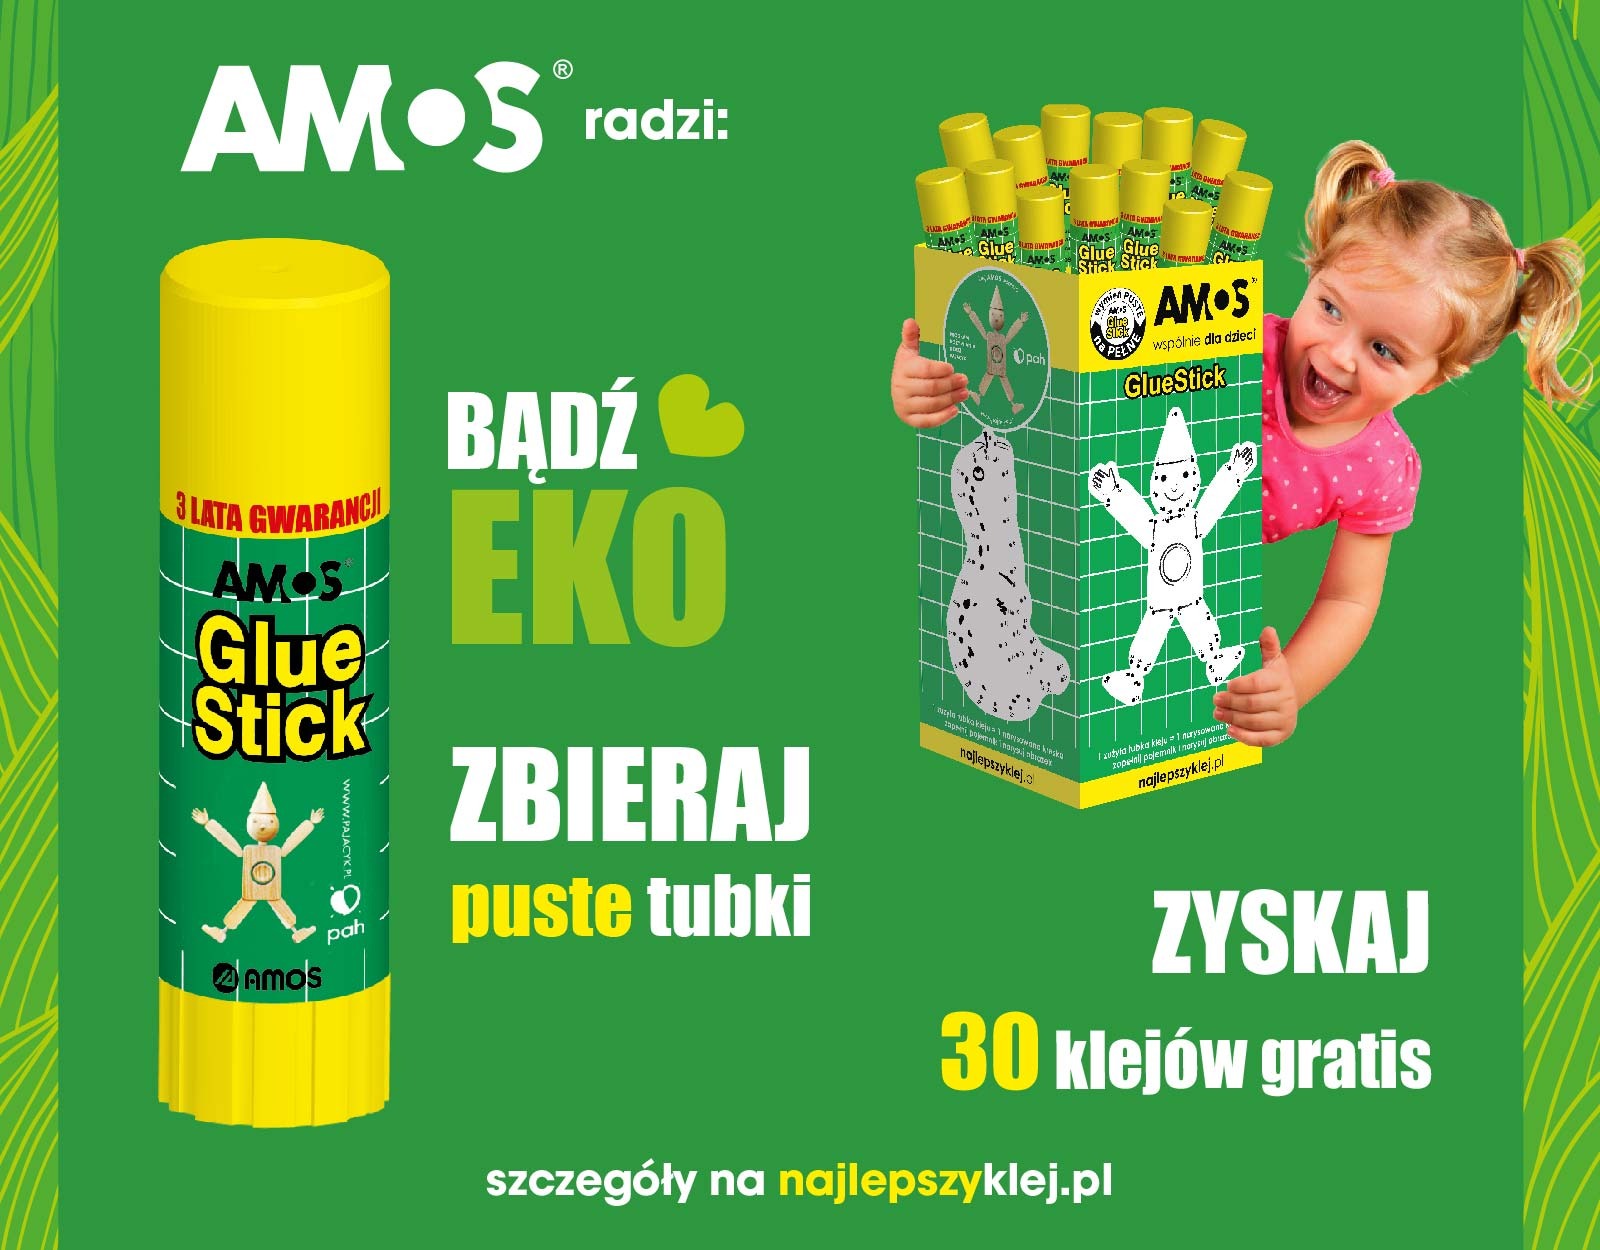 Plakat zachęcający do zbiórki tubek kleju AMOS. Zielone tło a na nim kleje, uśmiechnięta dziewczynka i hasło Bądź eko zbieraj puste tubki.